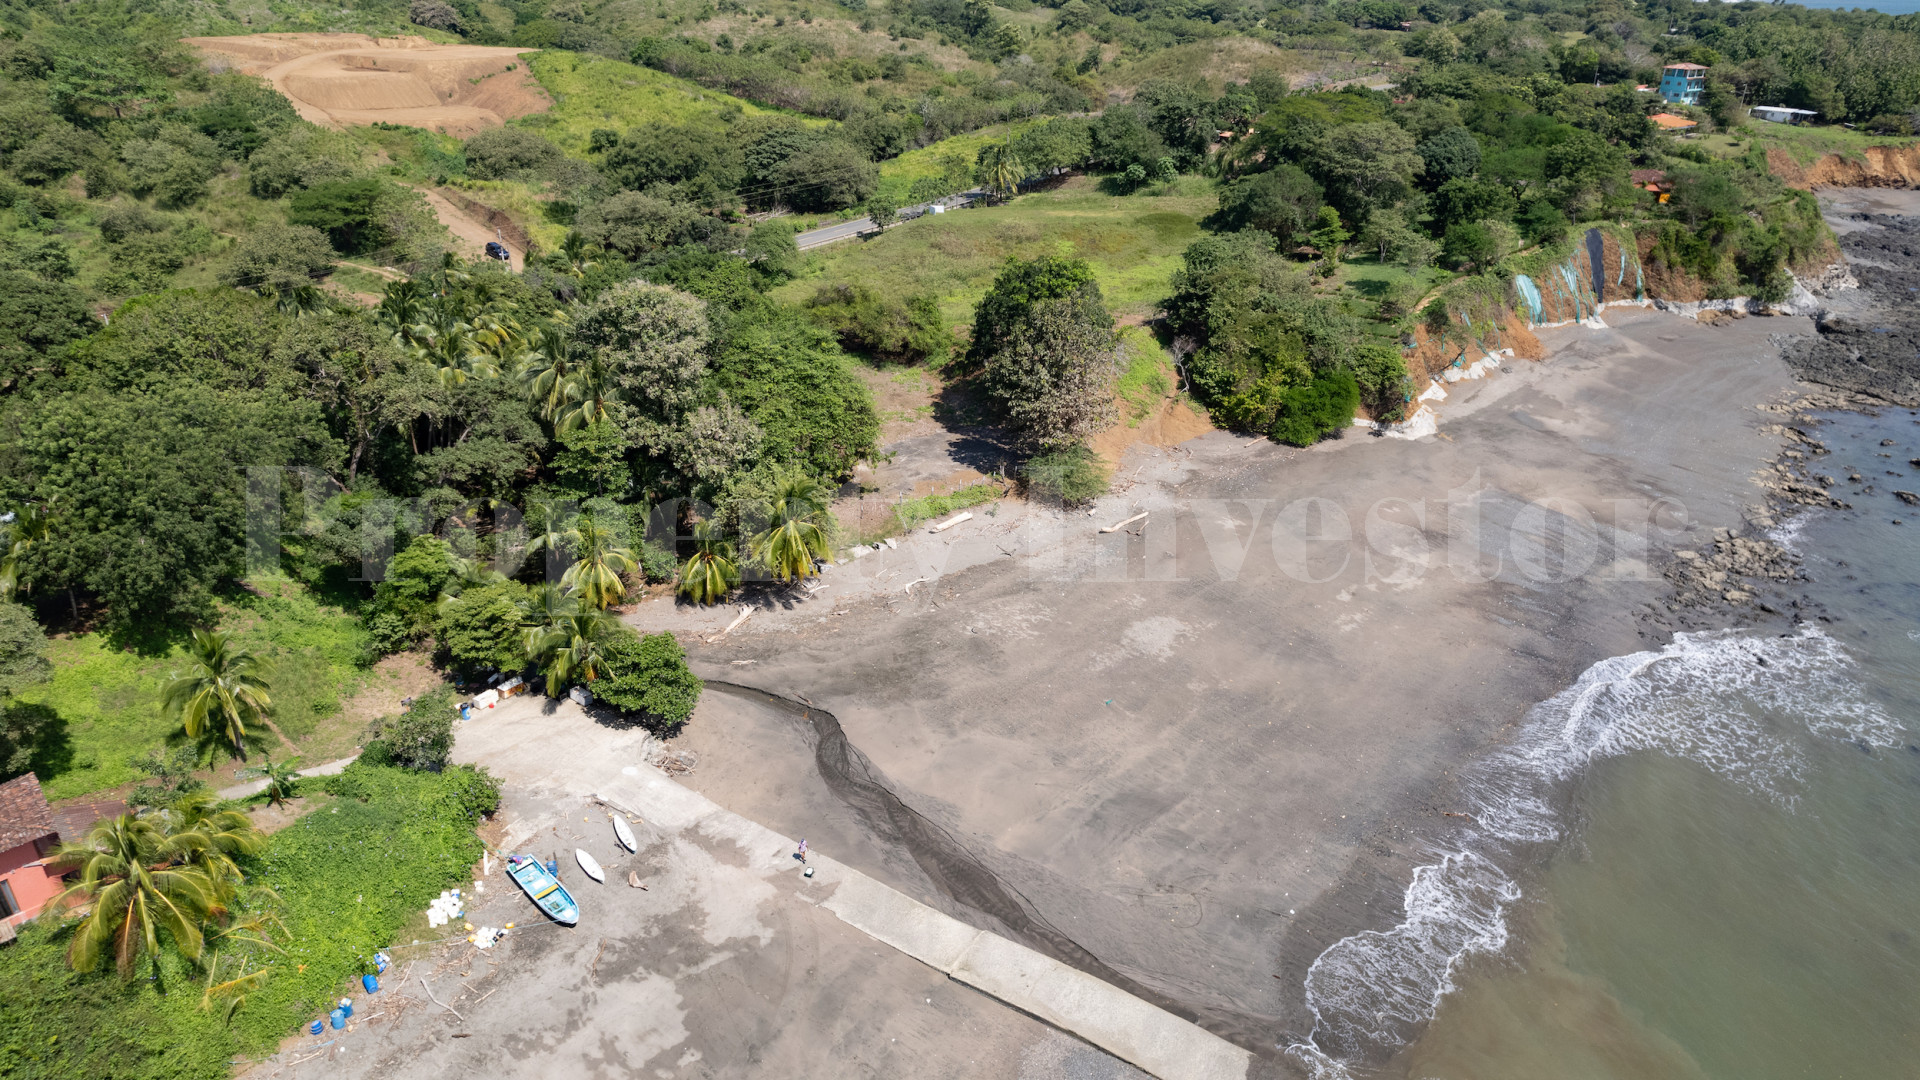 Продается живописный участок земли площадью почти 1 га в Плайя Венао, Панама